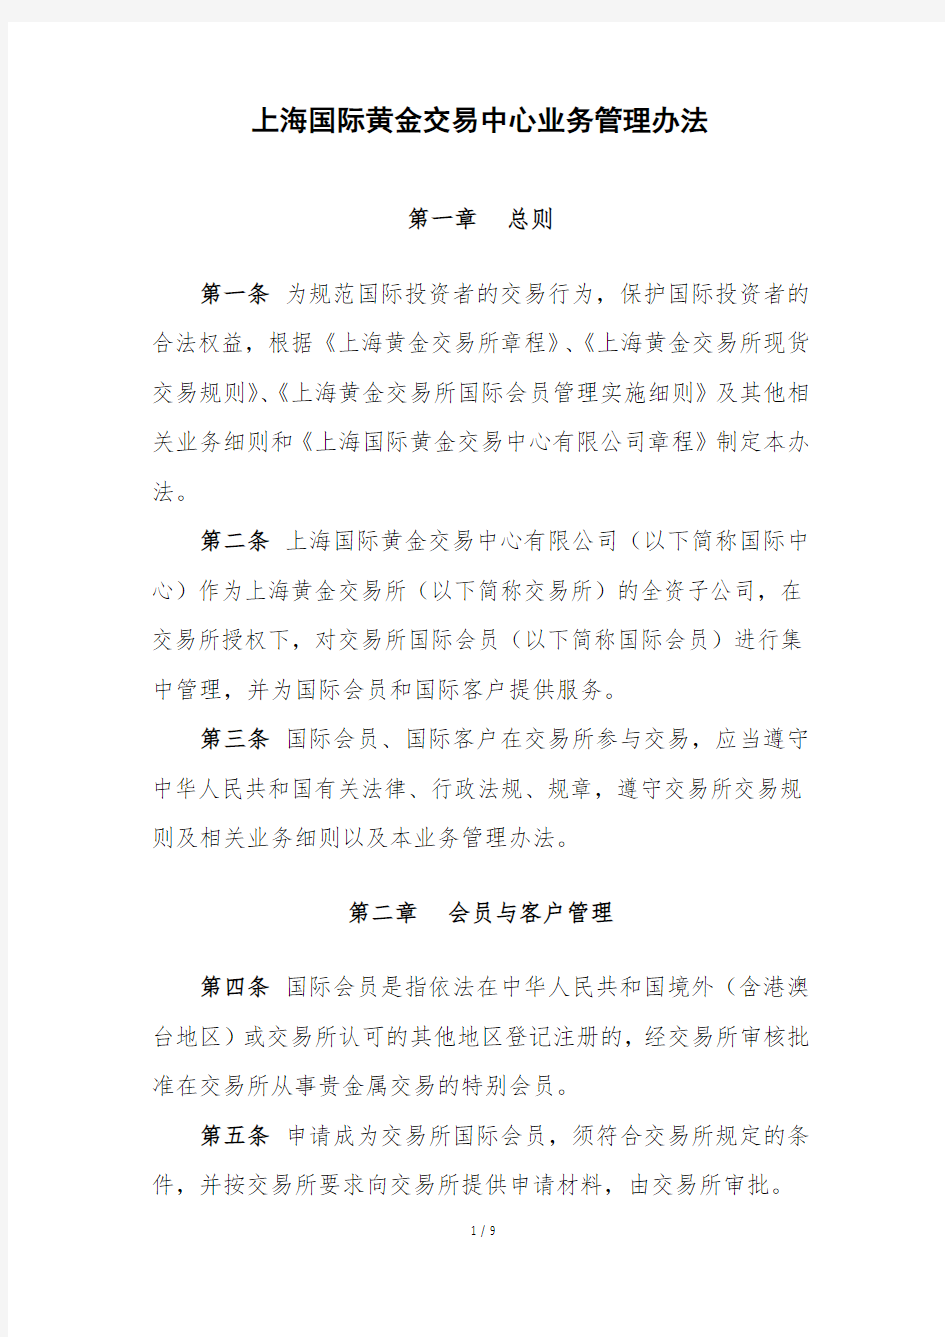 上海国际黄金交易中心业务管理办法